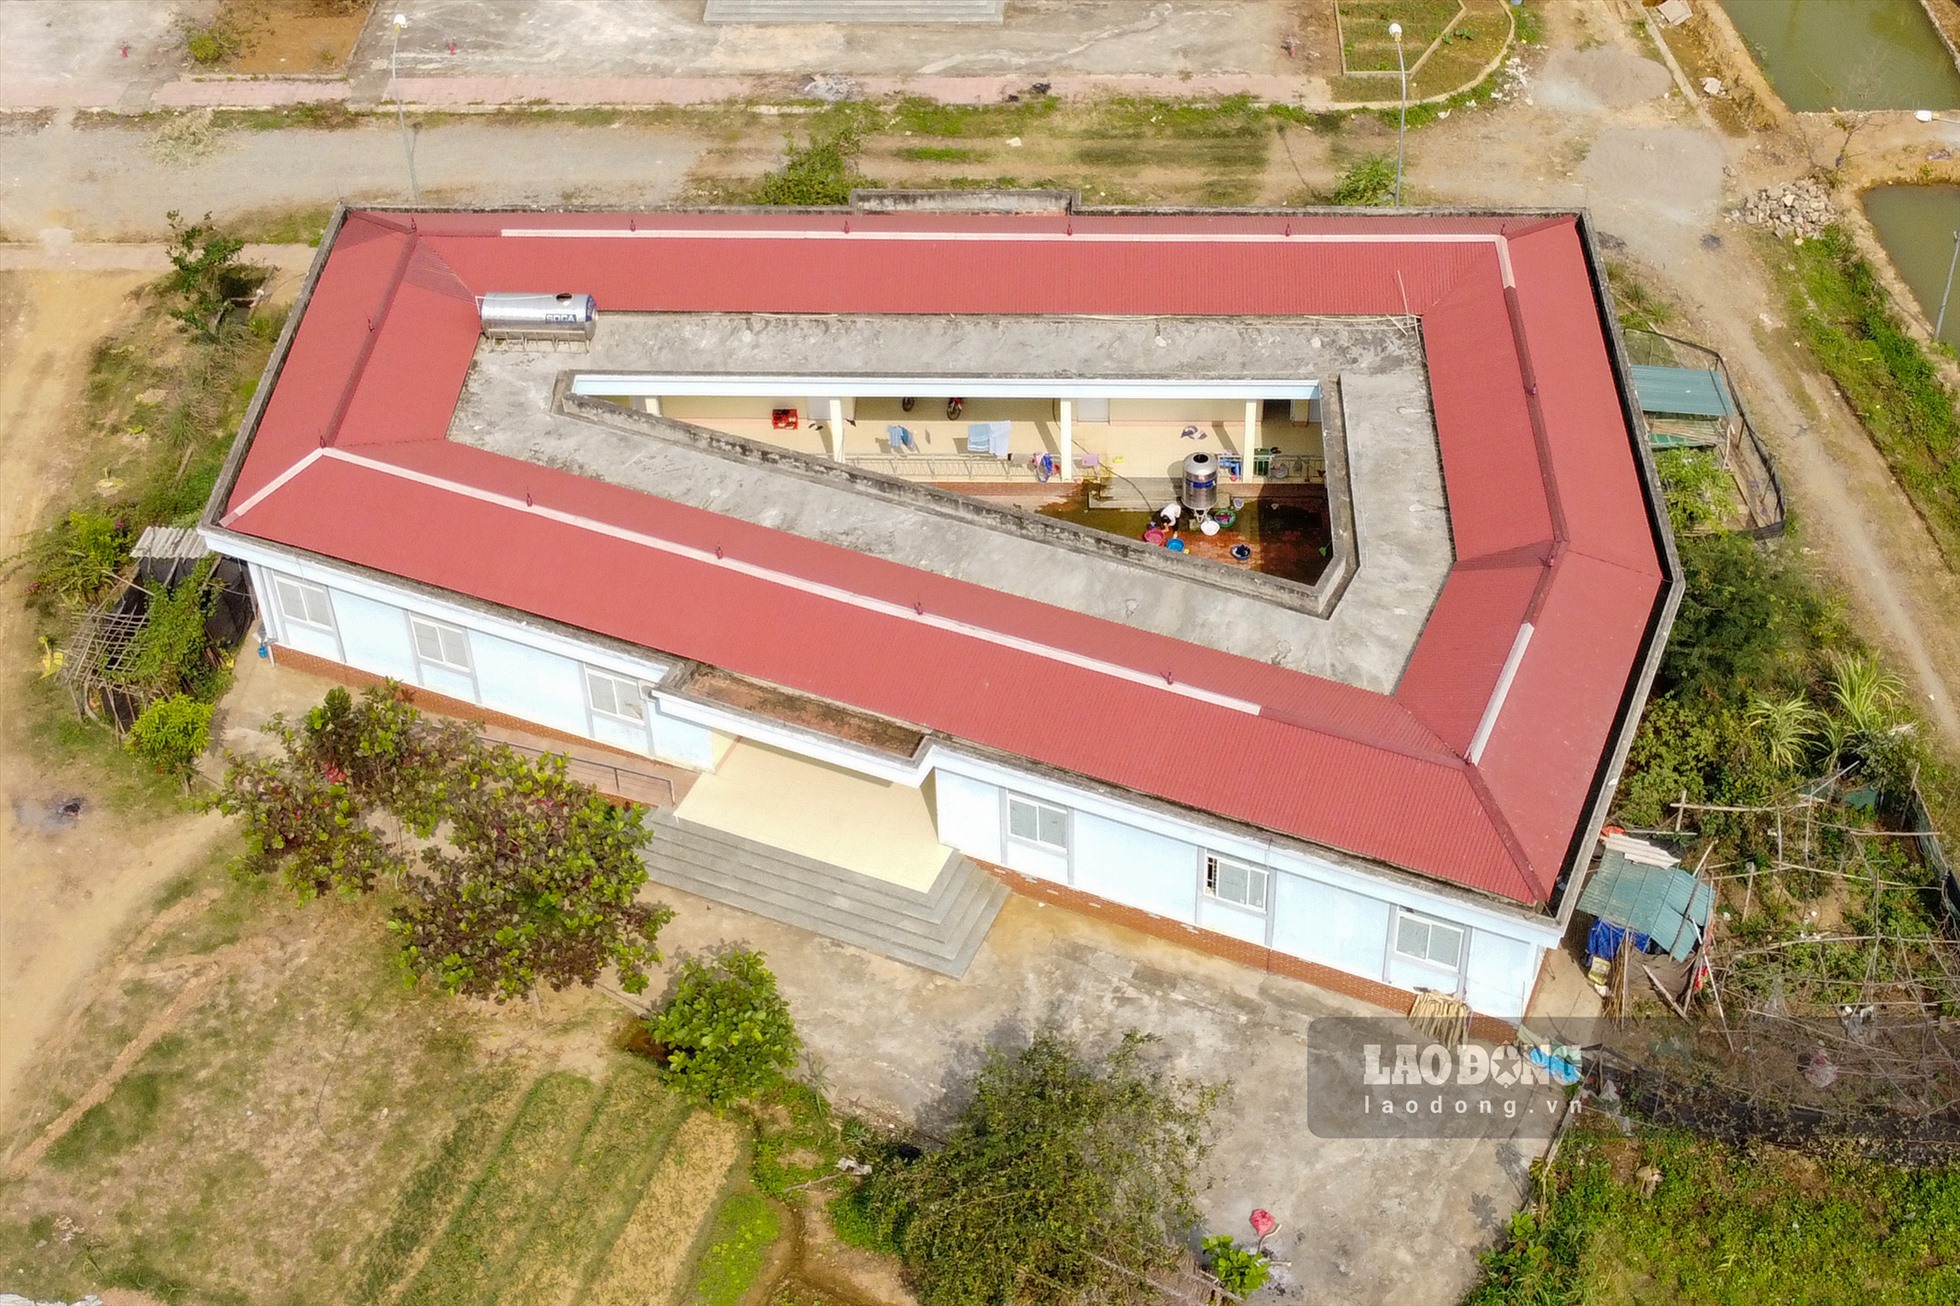 Trao đổi với PV, Đinh Đại Thanh - Giám đốc Ban QLDA đầu tư xây dựng huyện Mường La khẳng định, công trình này không phải bỏ hoang mà đã được sử dụng trong thời gian diễn ra dịch bệnh COVID-19.